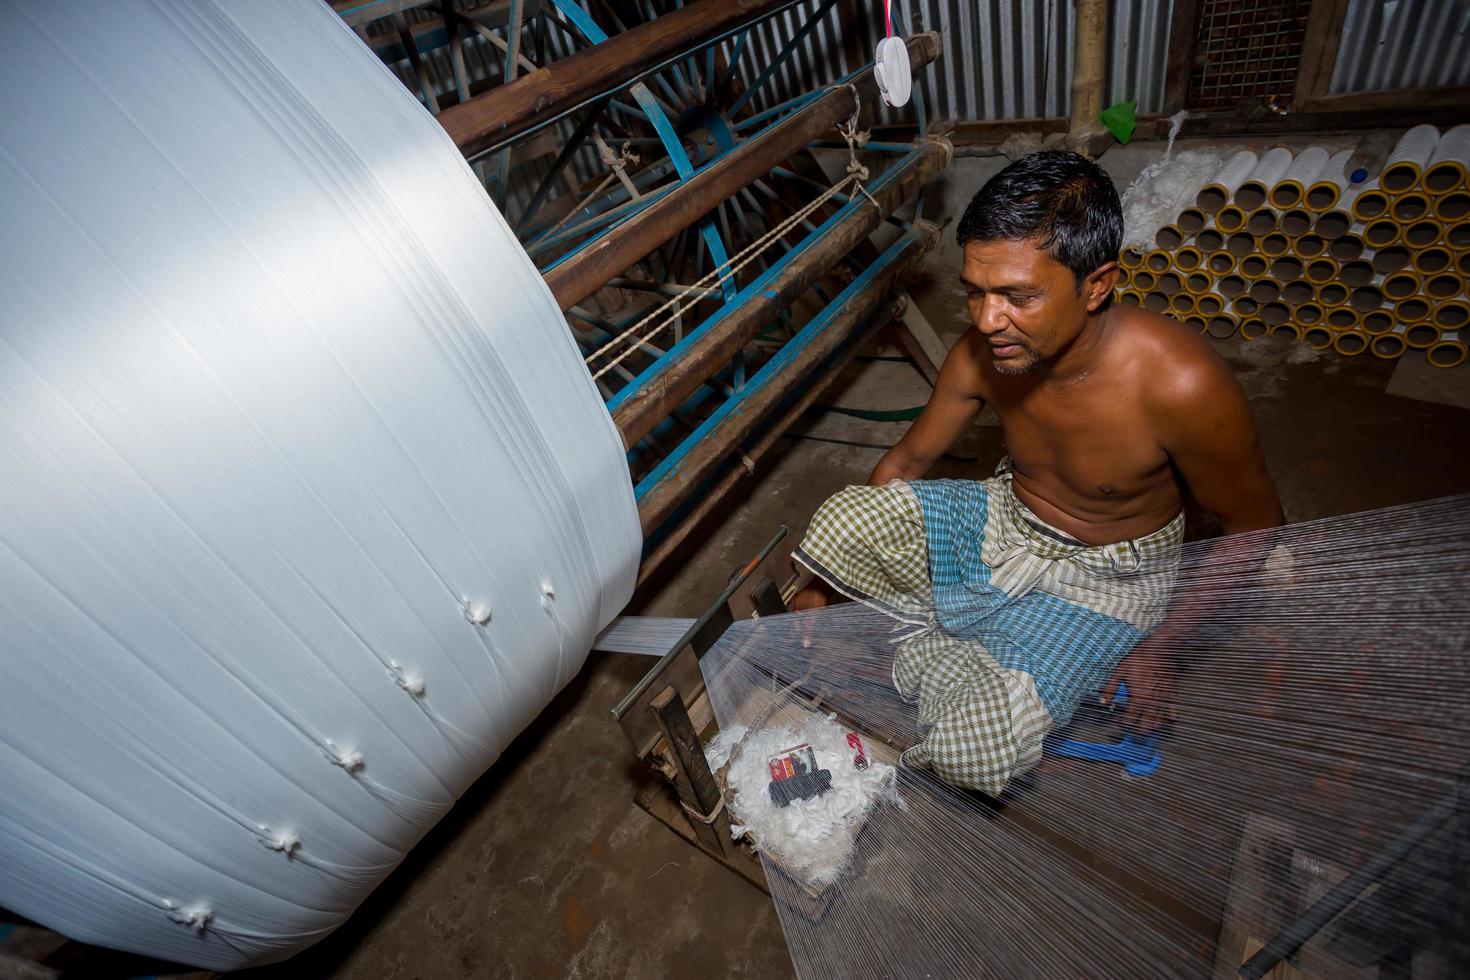 Bangladesh August 05, 2019 A factory worker makes white yarn spools for making clothes at Narsingdi, Bangladesh. photo